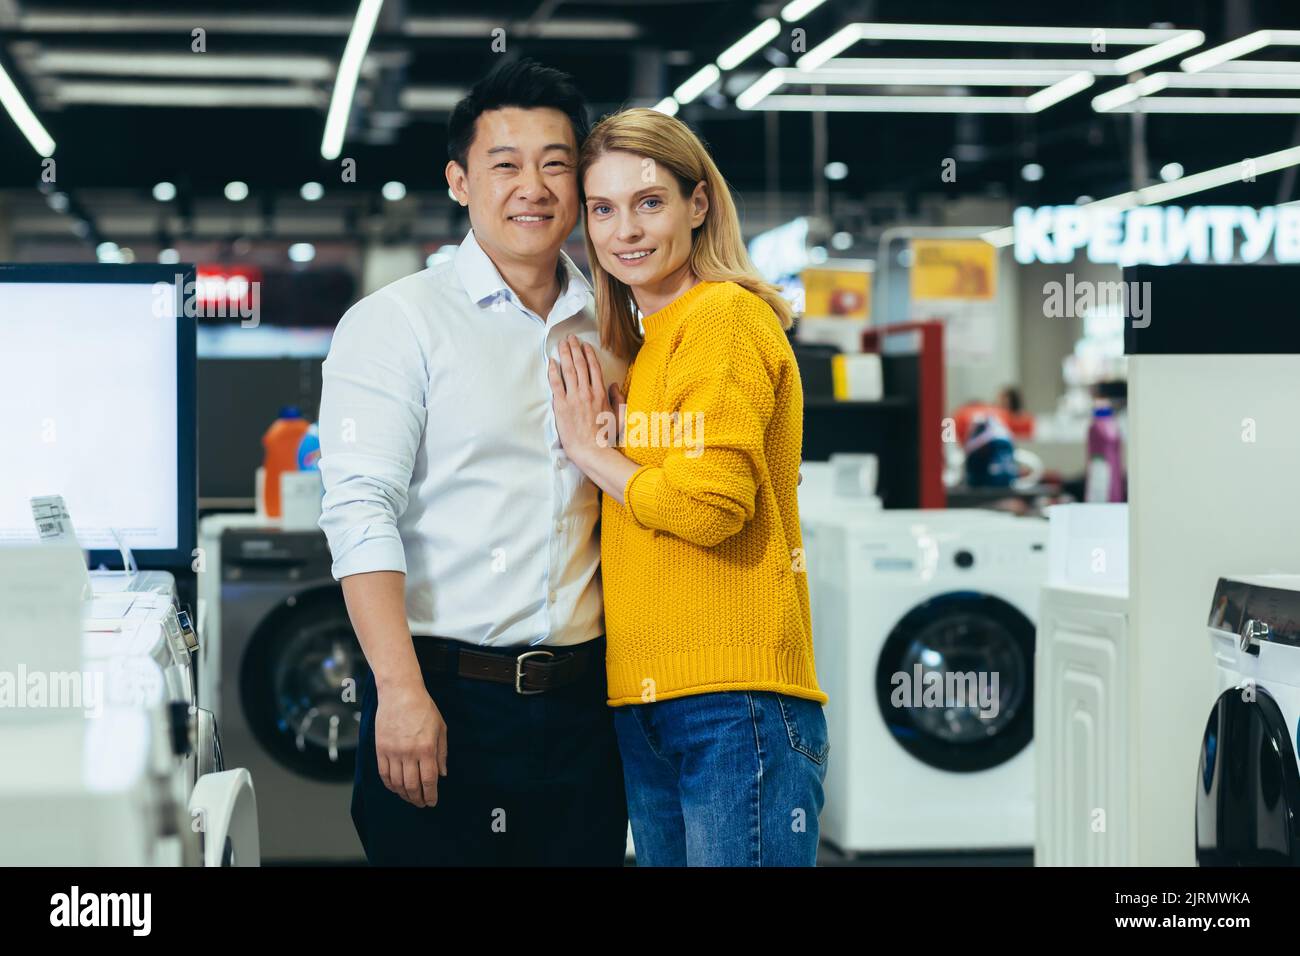 Portrait d'un jeune couple marié magasiner dans un supermarché d'appareils ménagers, une famille diversifiée d'un homme et d'une femme souriant et regardant l'appareil photo, le choix et l'achat d'appareils électroménagers Banque D'Images